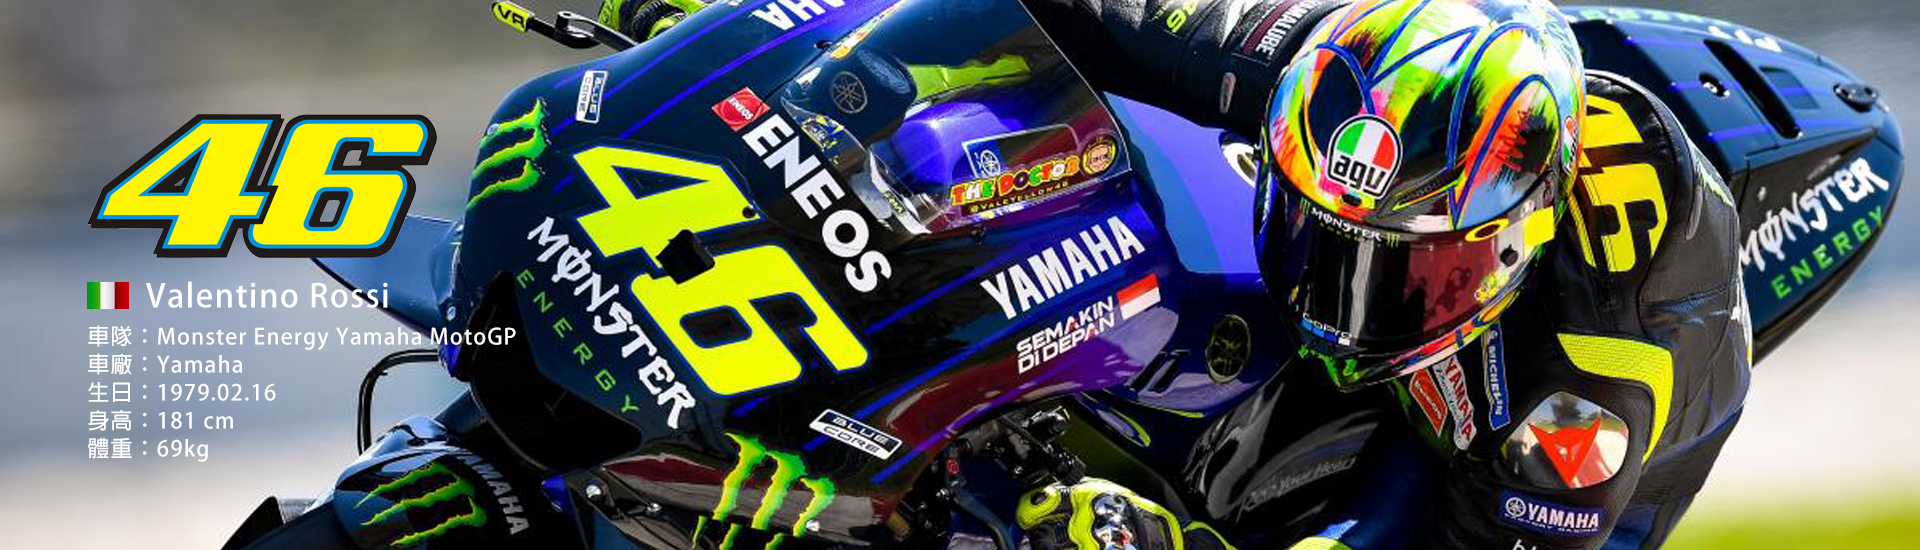 2019 MotoGP 【46】Valentino Rossi